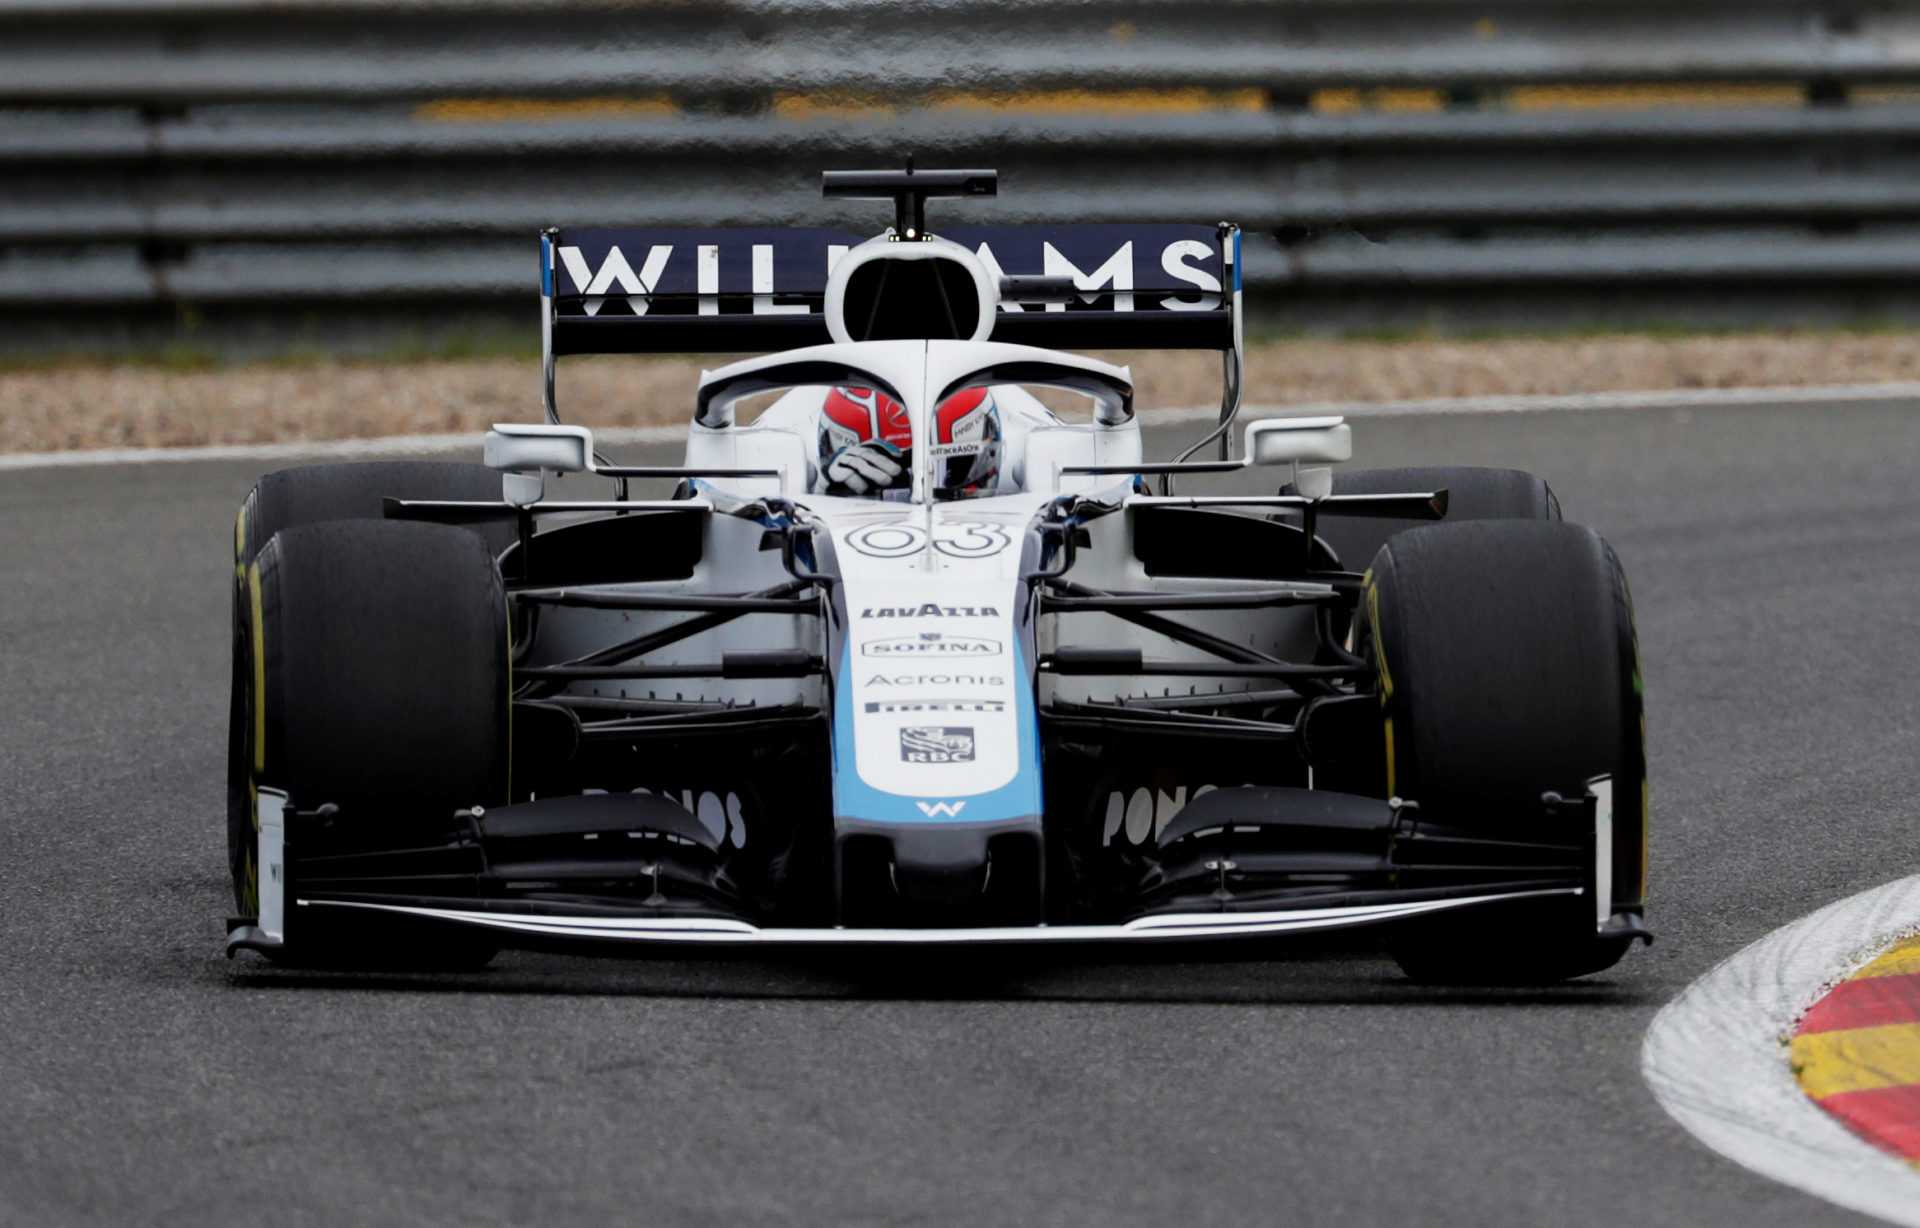 Williams F1 confirme la liste des pilotes 2021 mettant fin aux spéculations de Perez